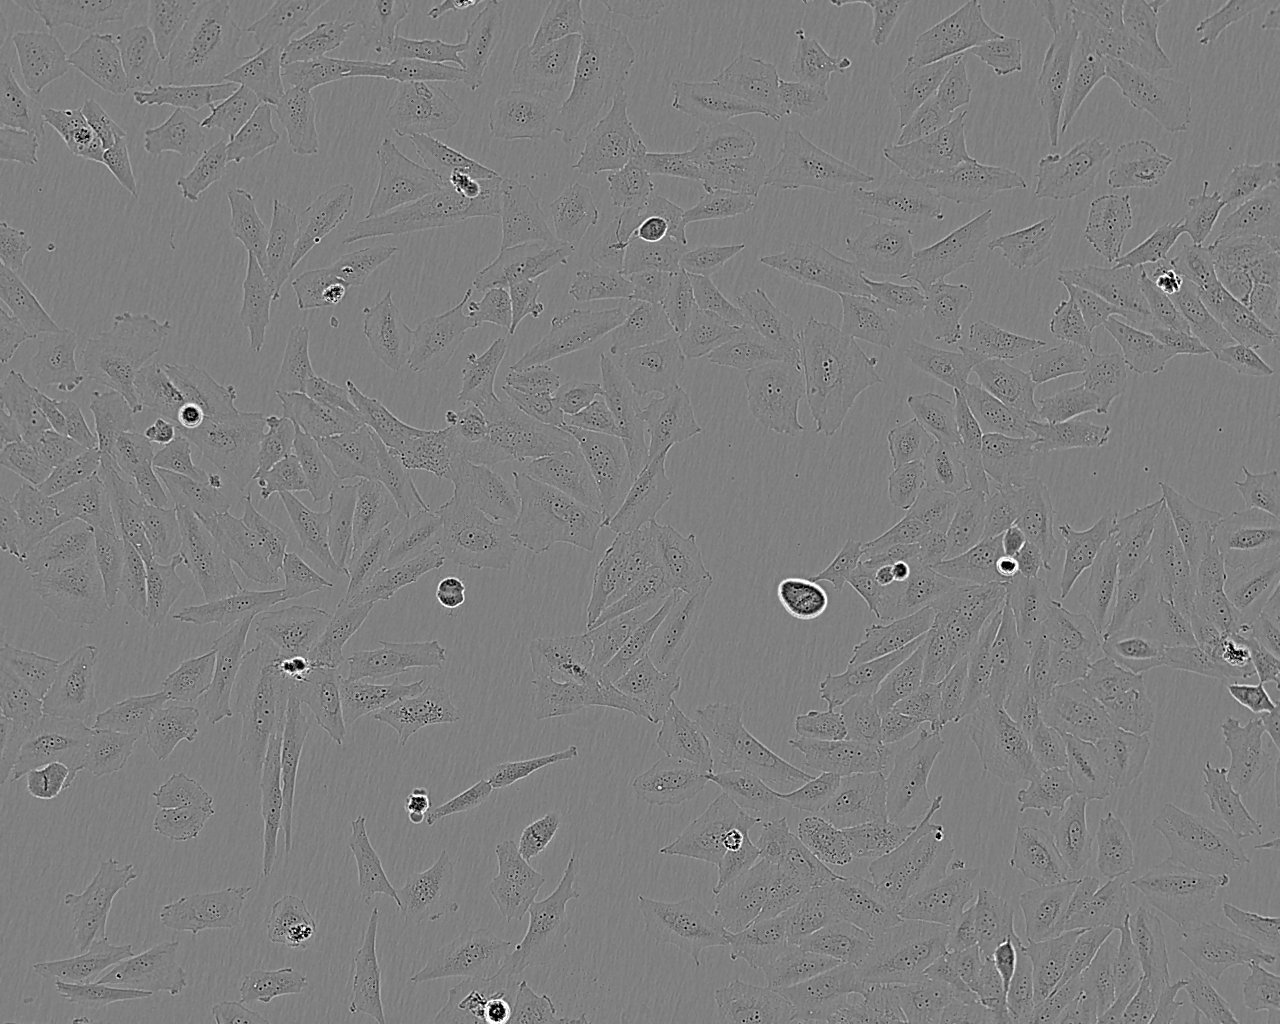 SN12C epithelioid cells人宫颈癌细胞系